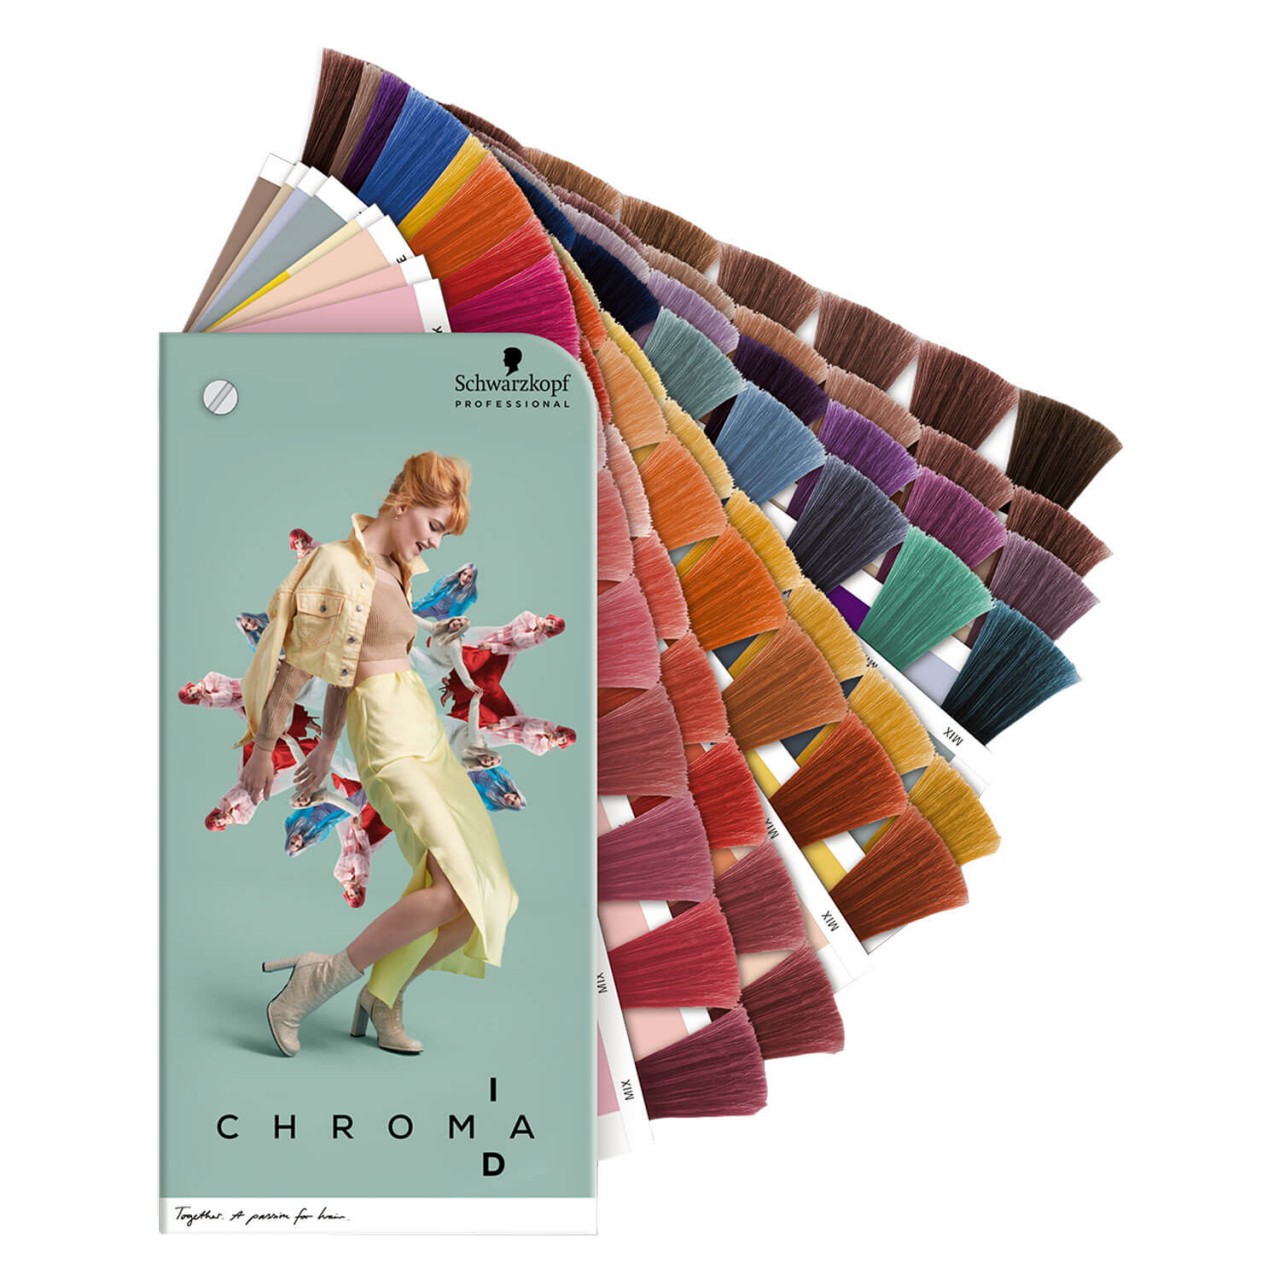 Salon Tools - Farbkarte Chroma ID Collection Version von Schwarzkopf